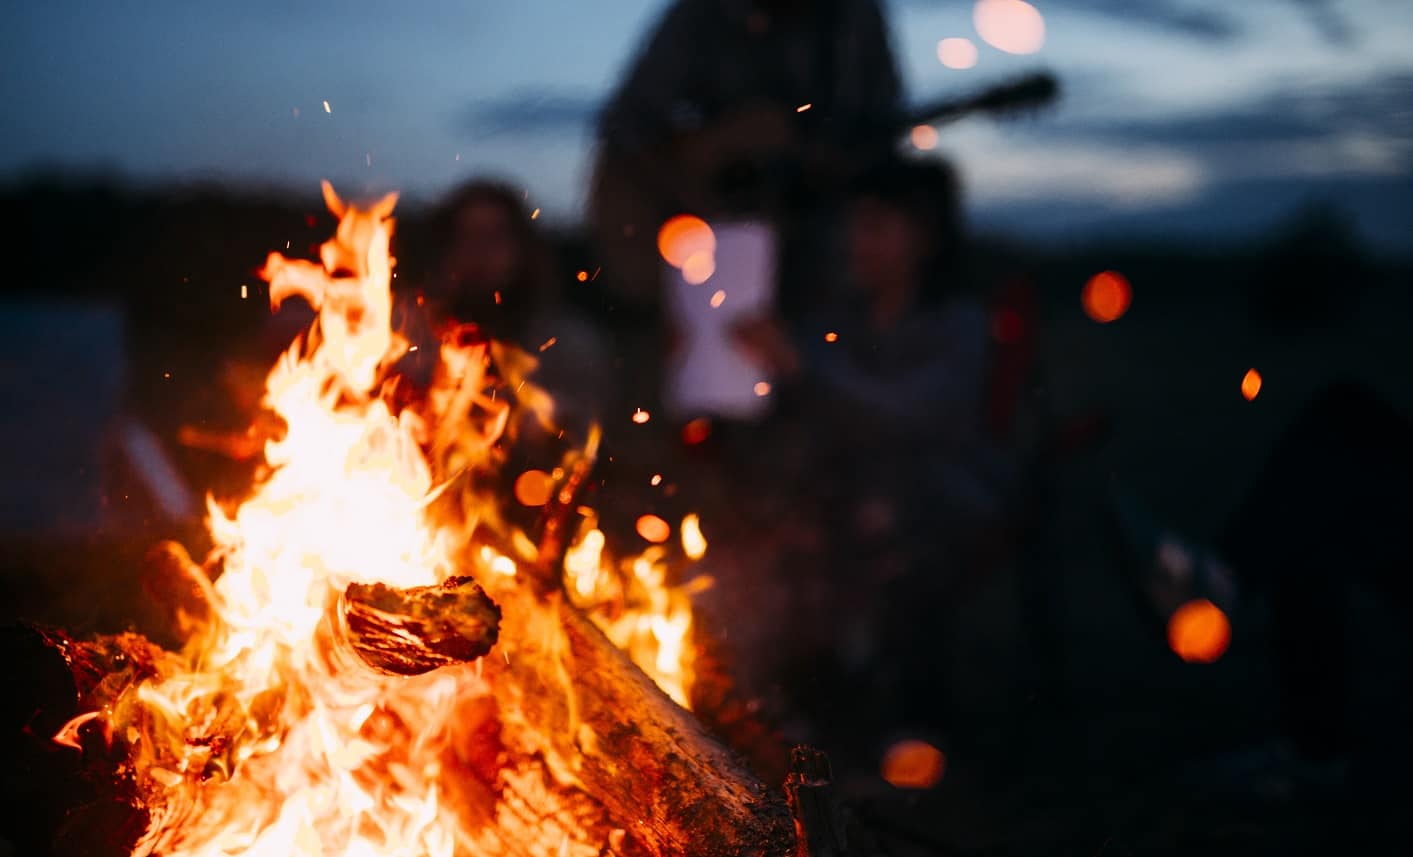 Enjoy bonfire night